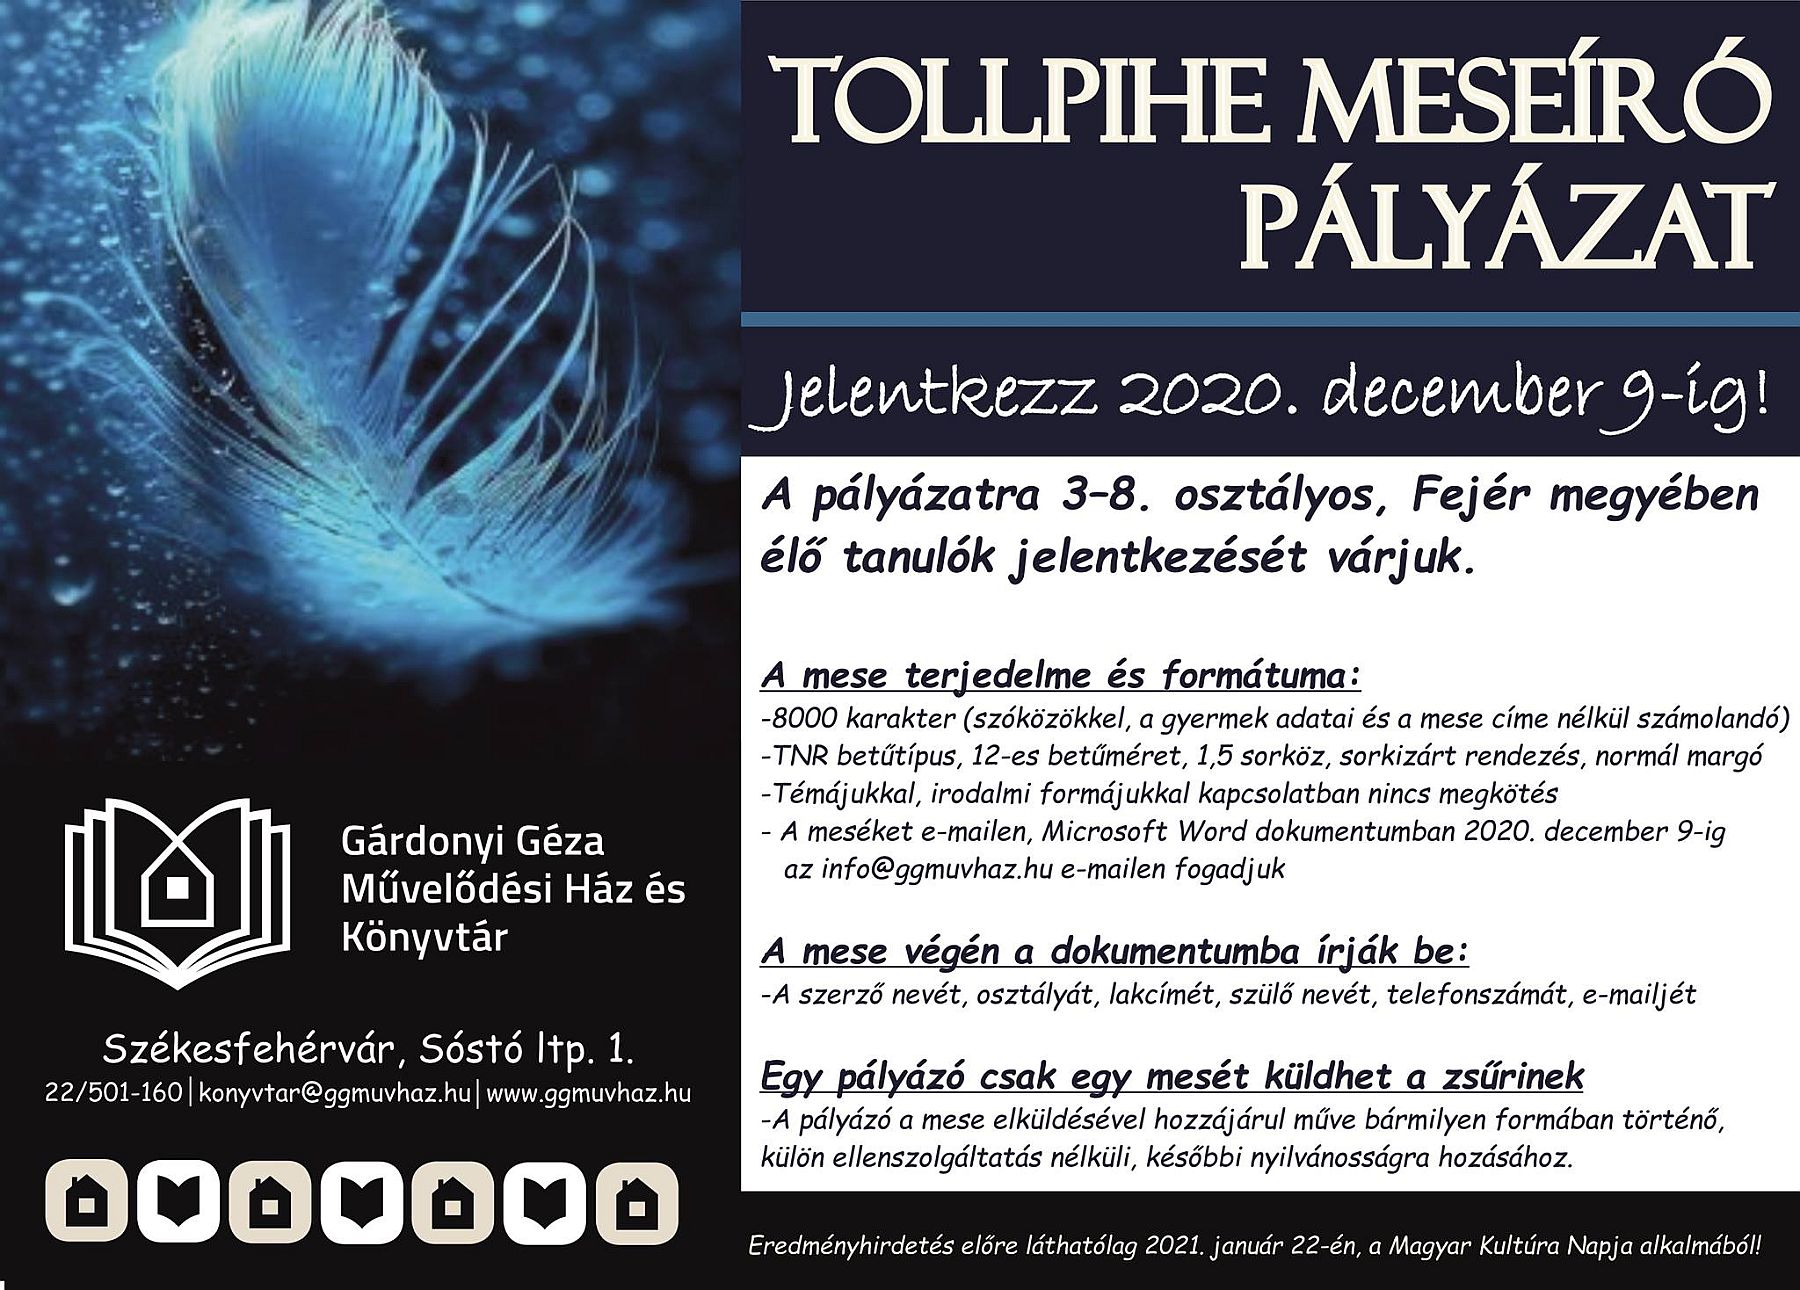 December 9-ig még lehet jelentkezni a Tollpihe Meseíró Pályázatra